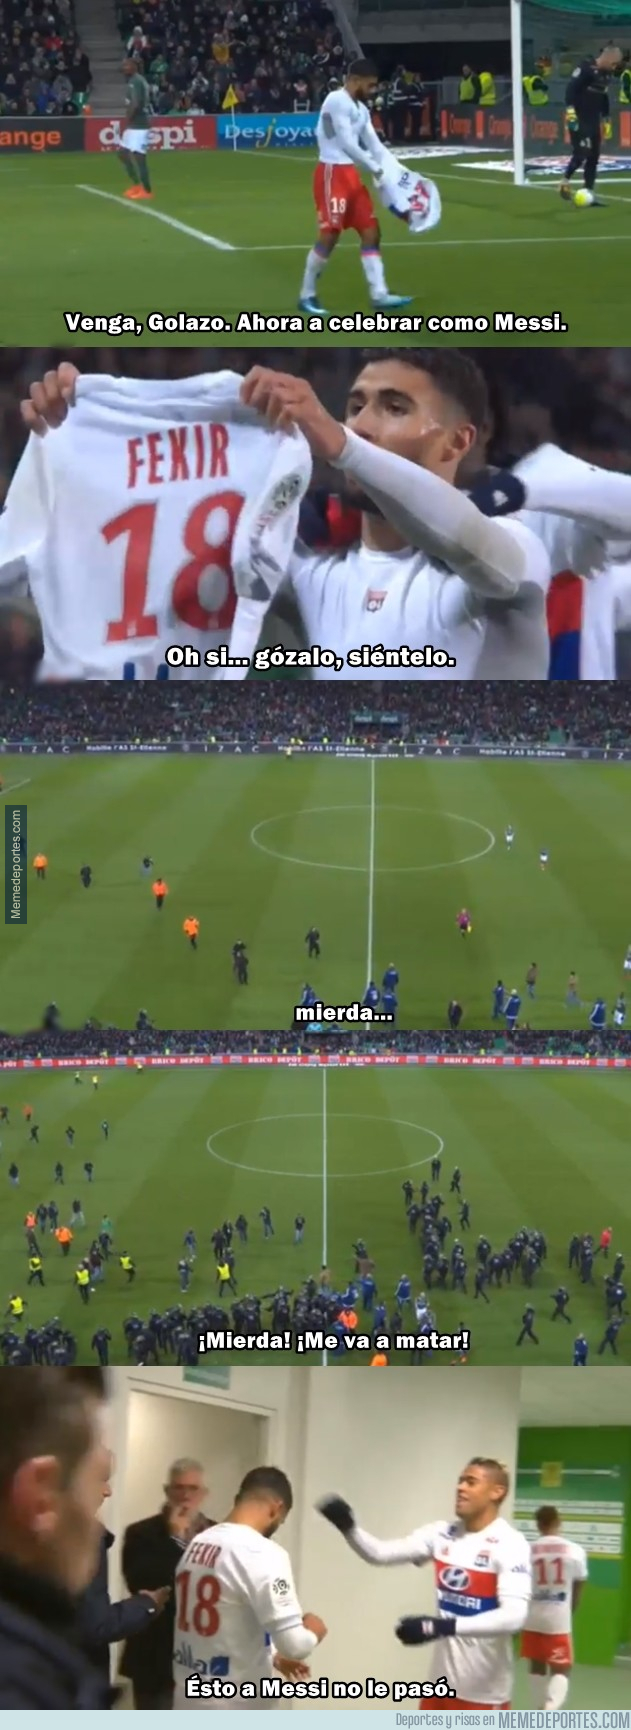 1006856 - Nabil Fekir del Lyon intentó celebrar como Messi y se le volcó el estadio encima.